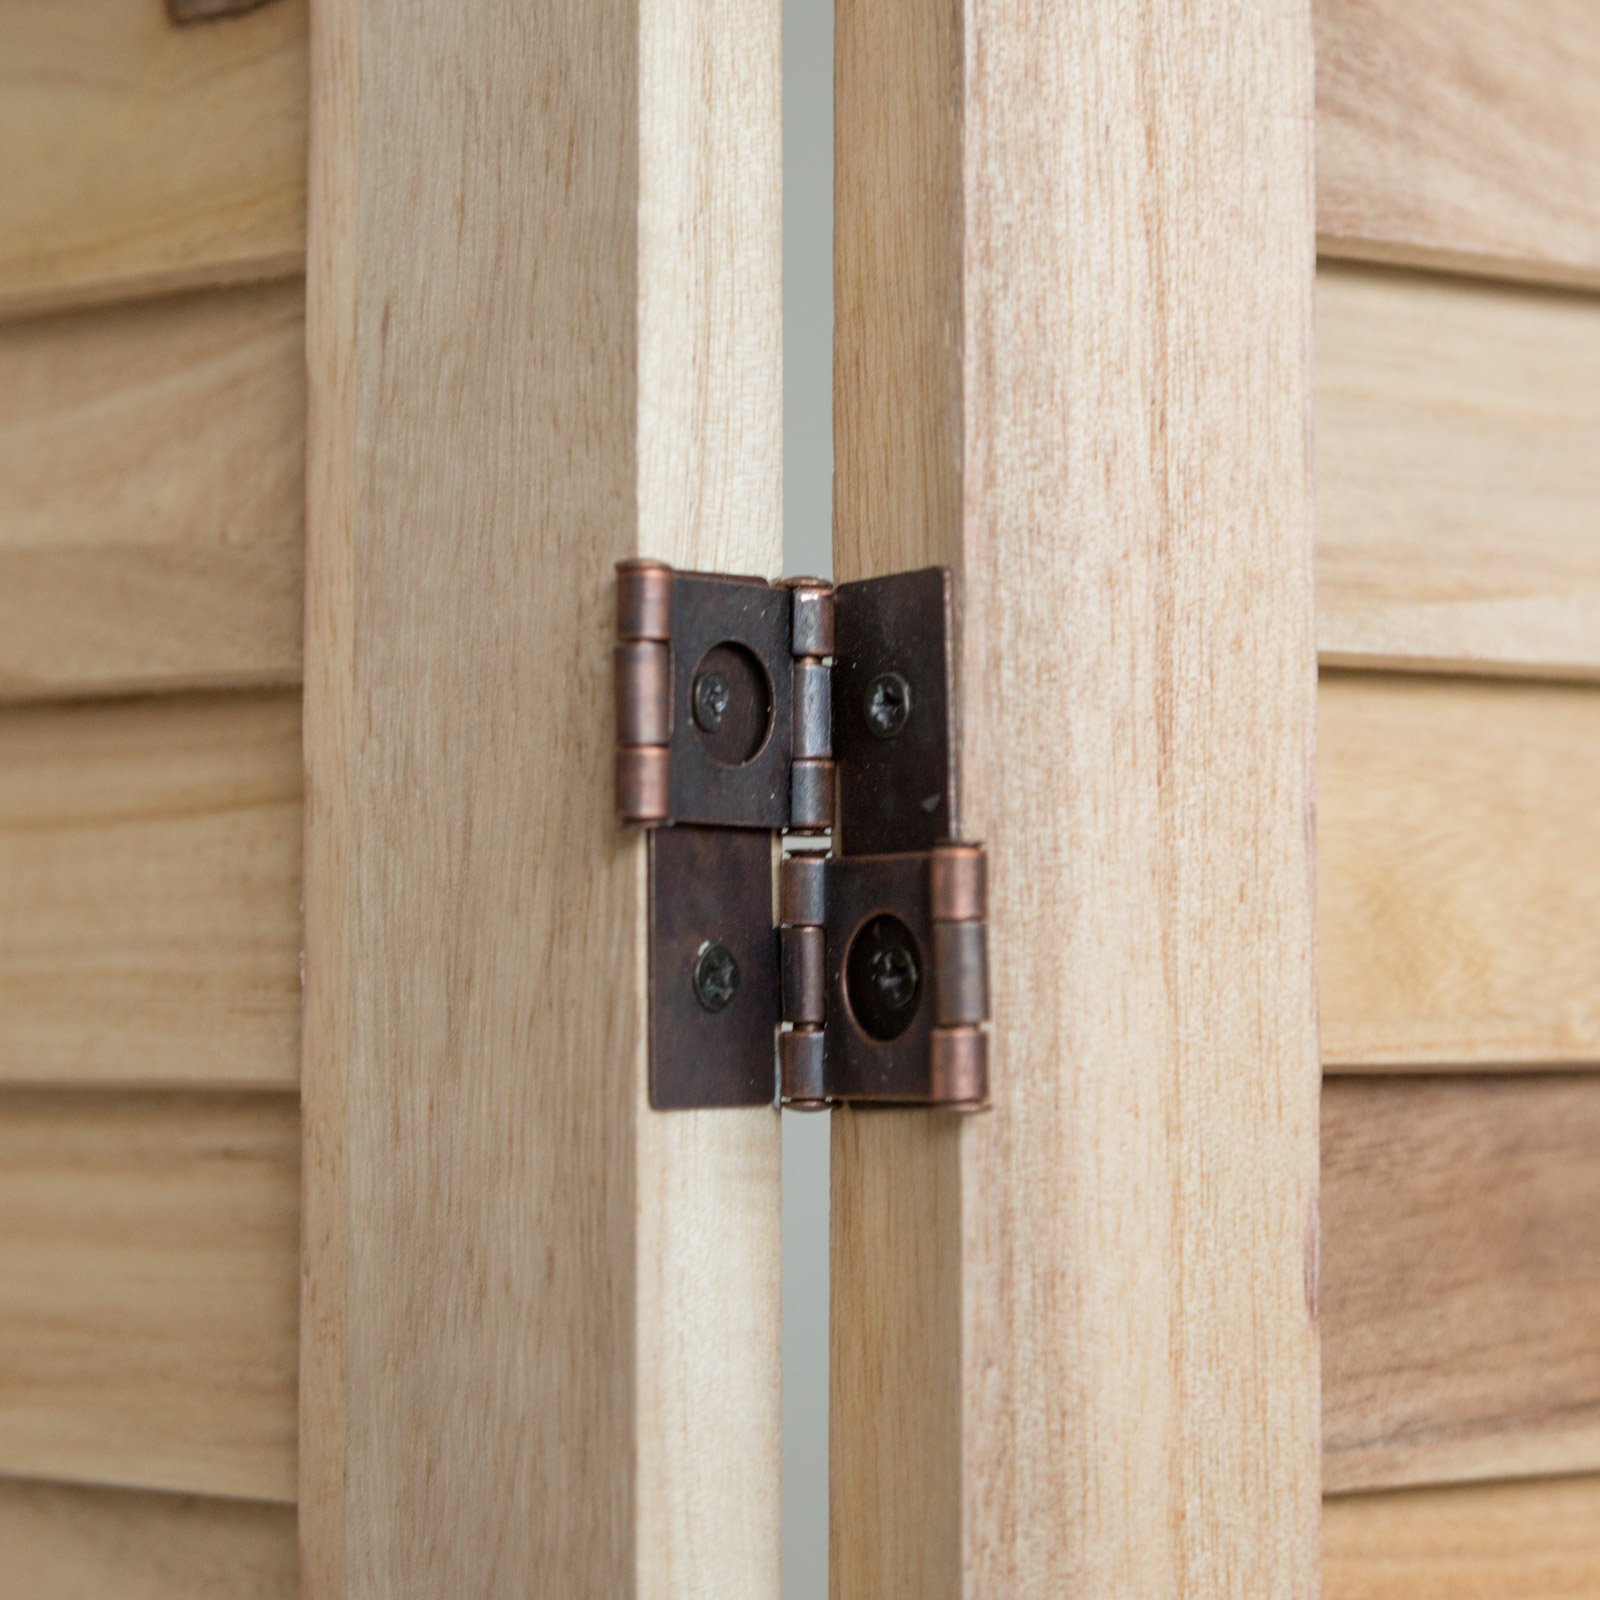 Paravent Raumteiler 4 fach Holz Trennwand spanische Wand Sichtschutz natur